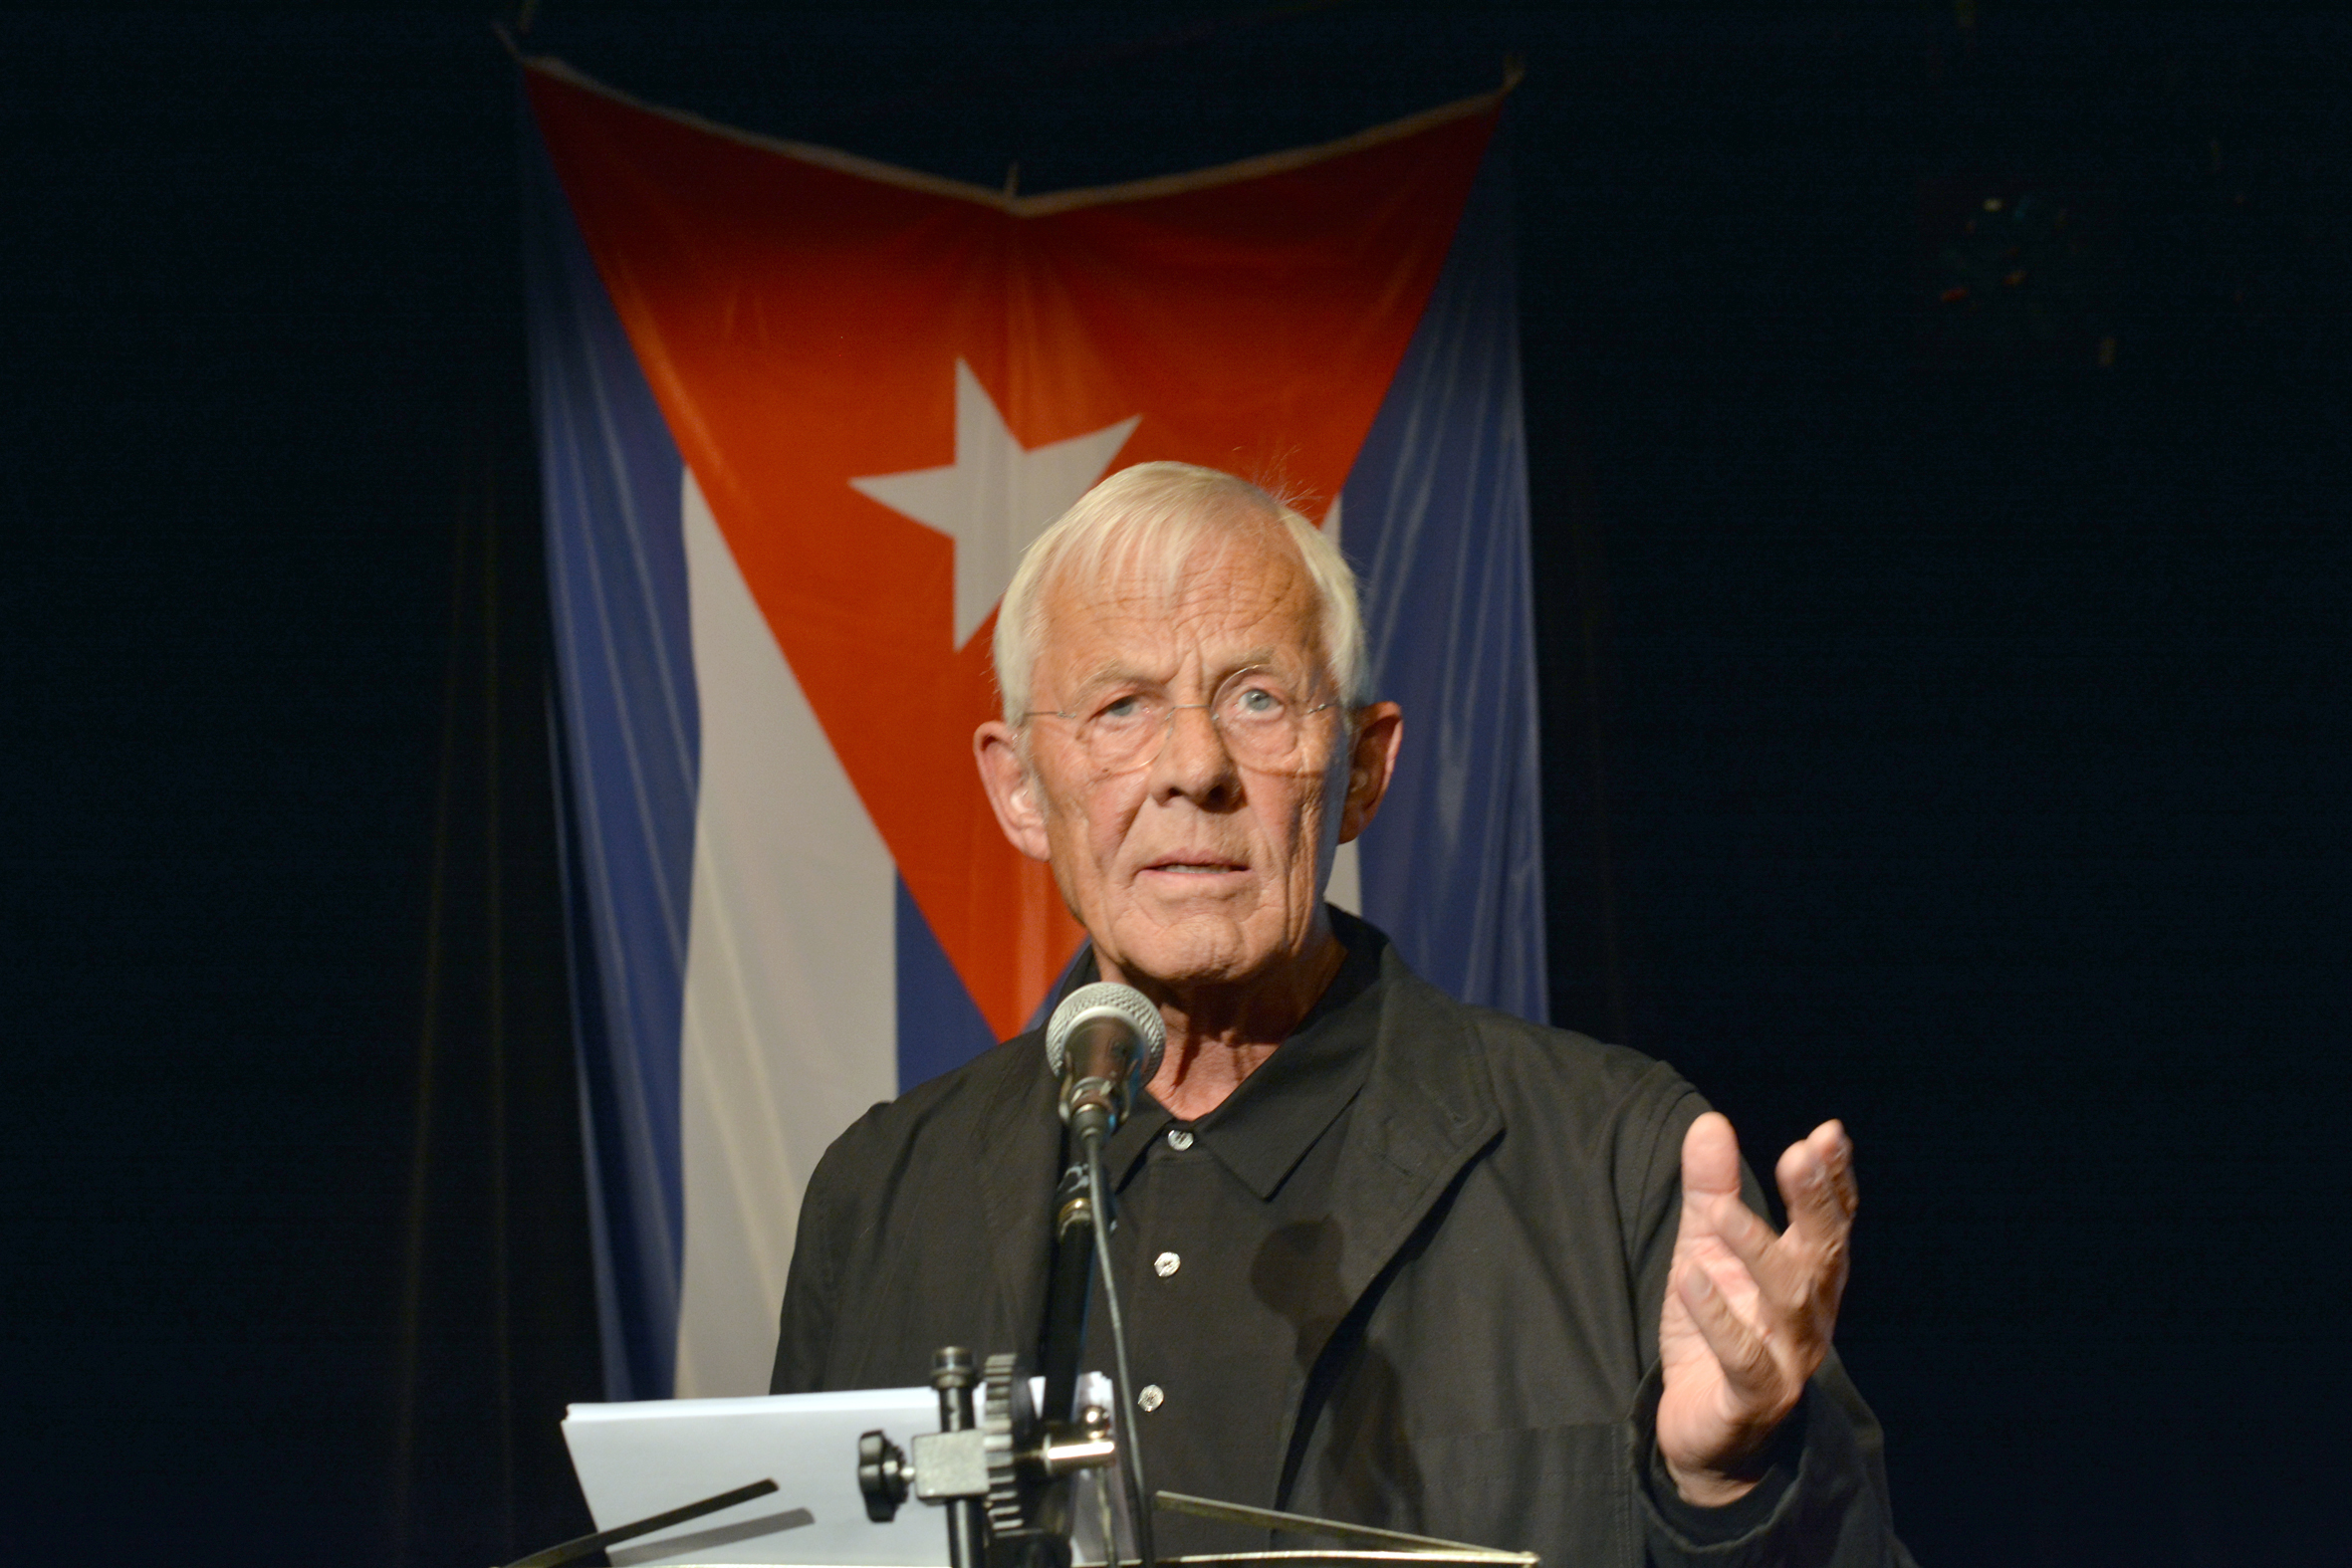 Rolf Becker liest Fidel Castro